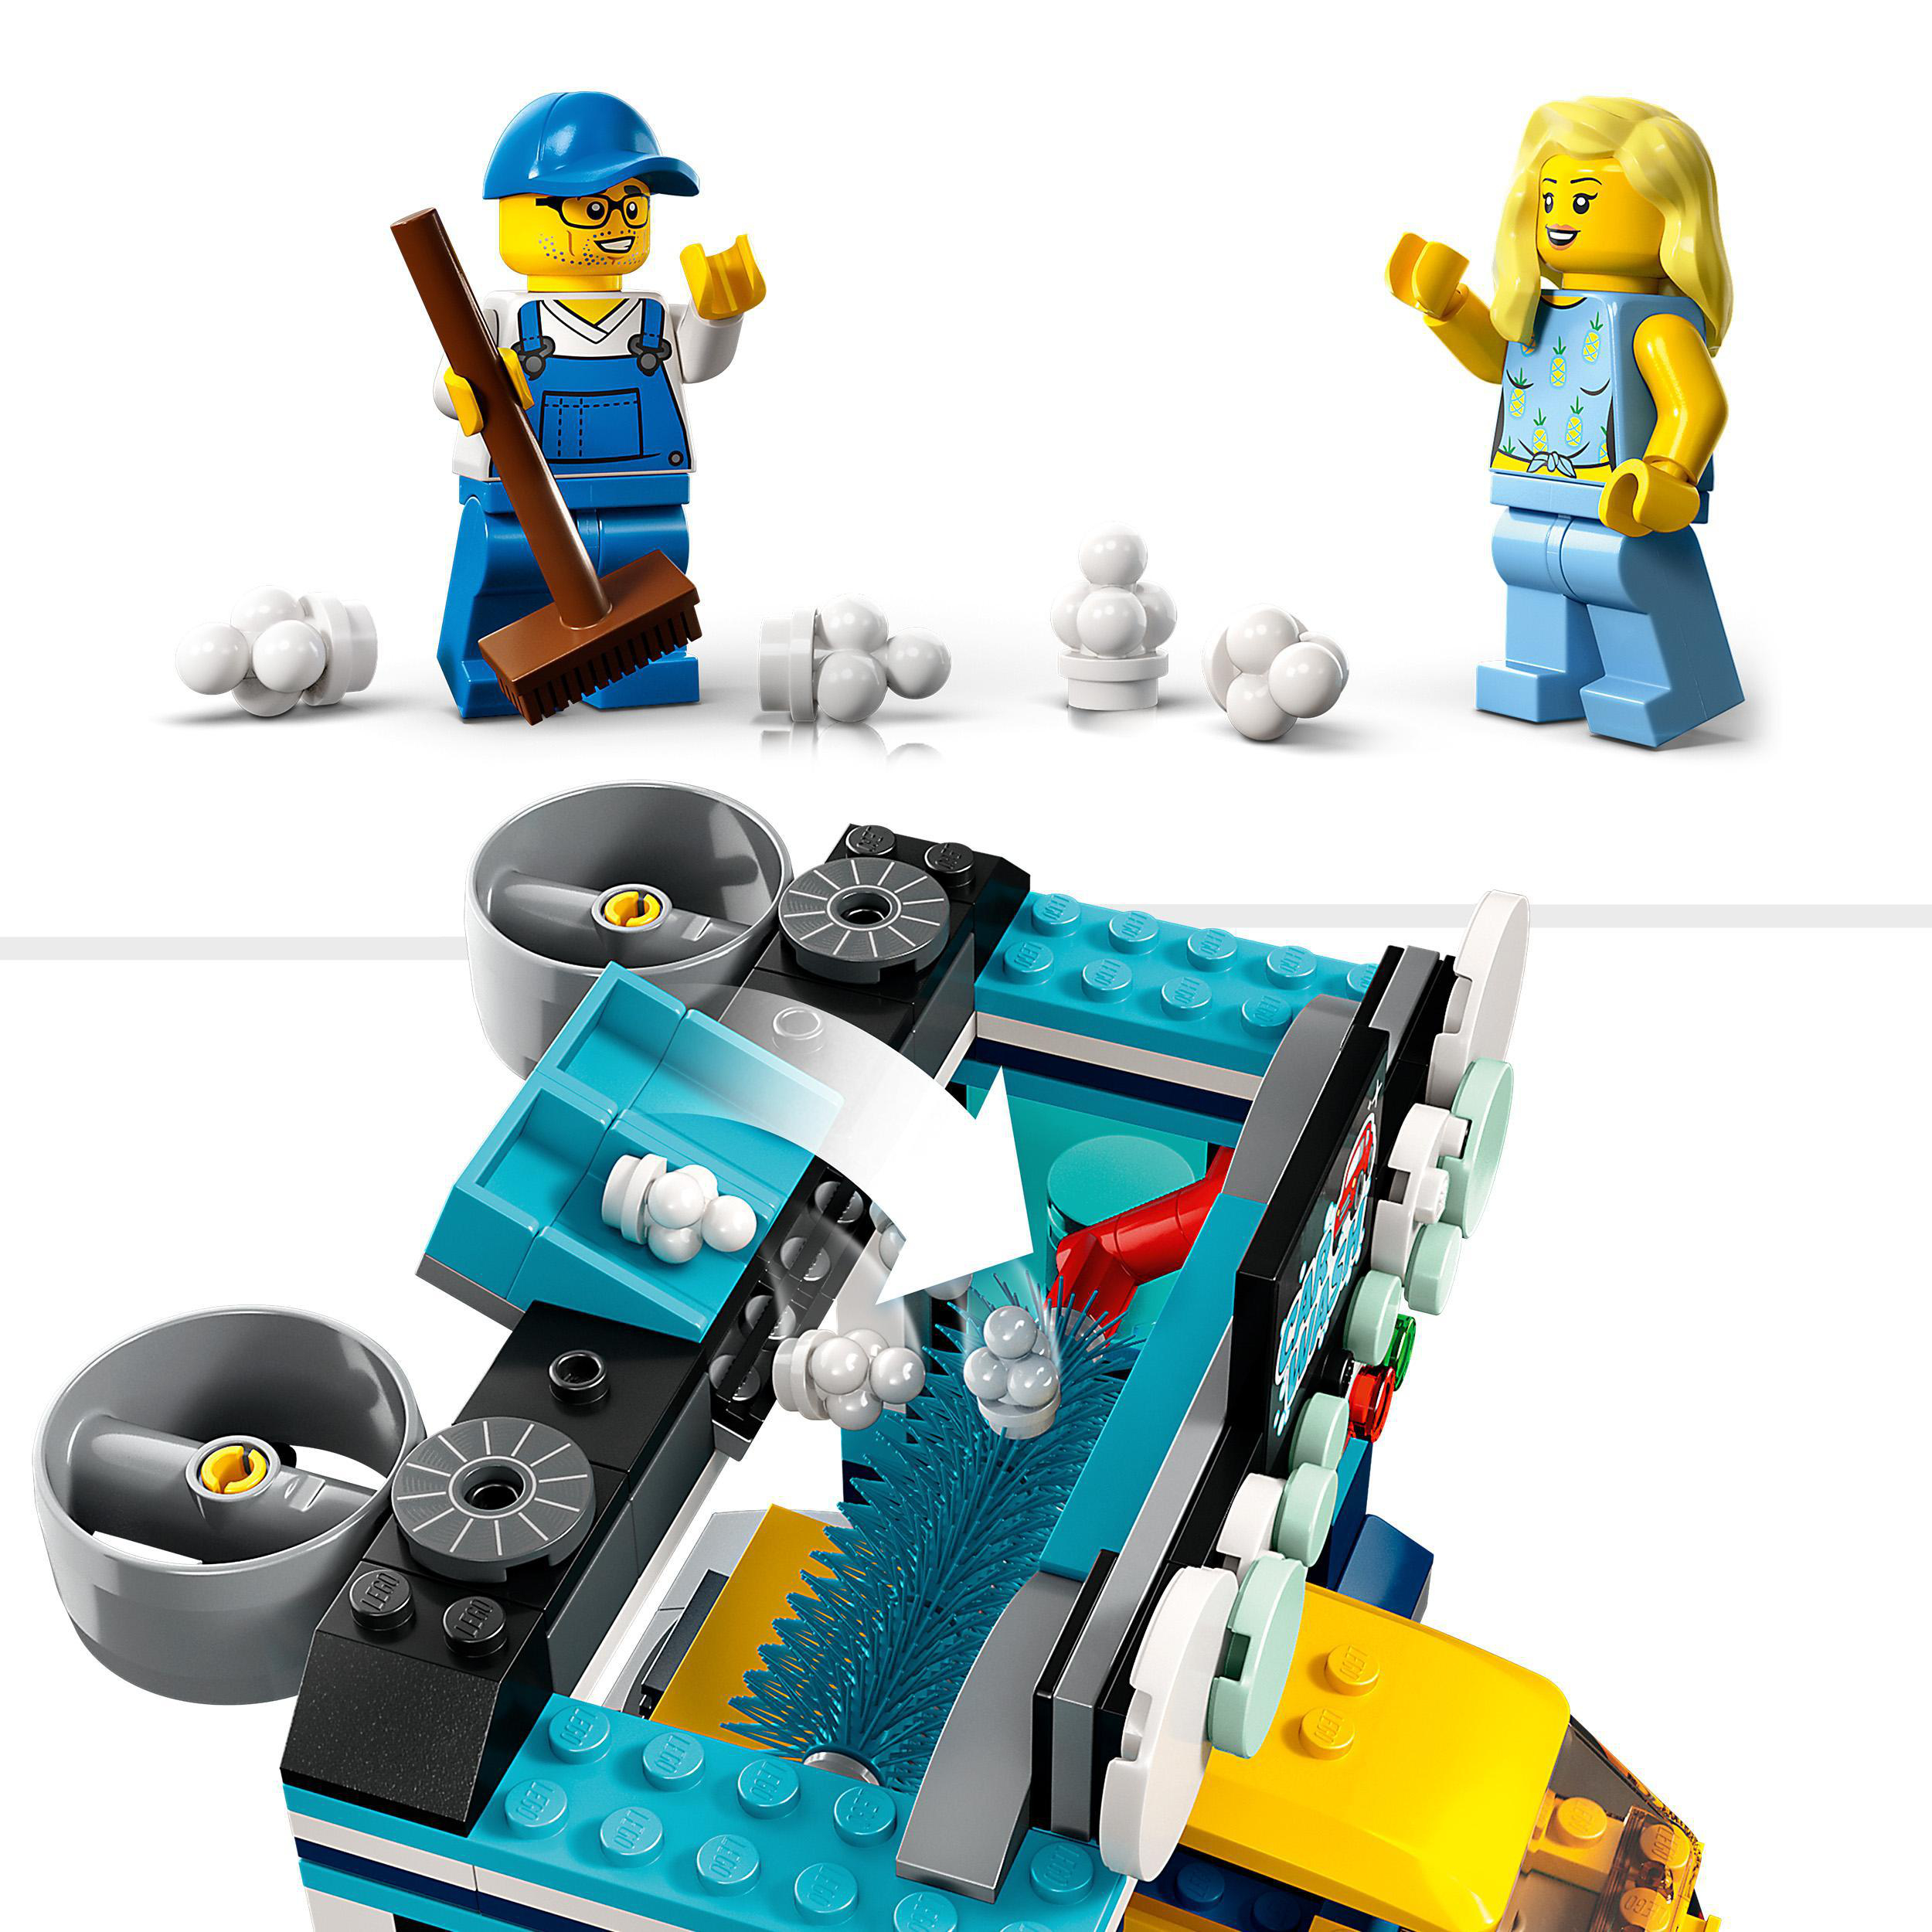 LEGO City Bausatz, Autowaschanlage Mehrfarbig 60362